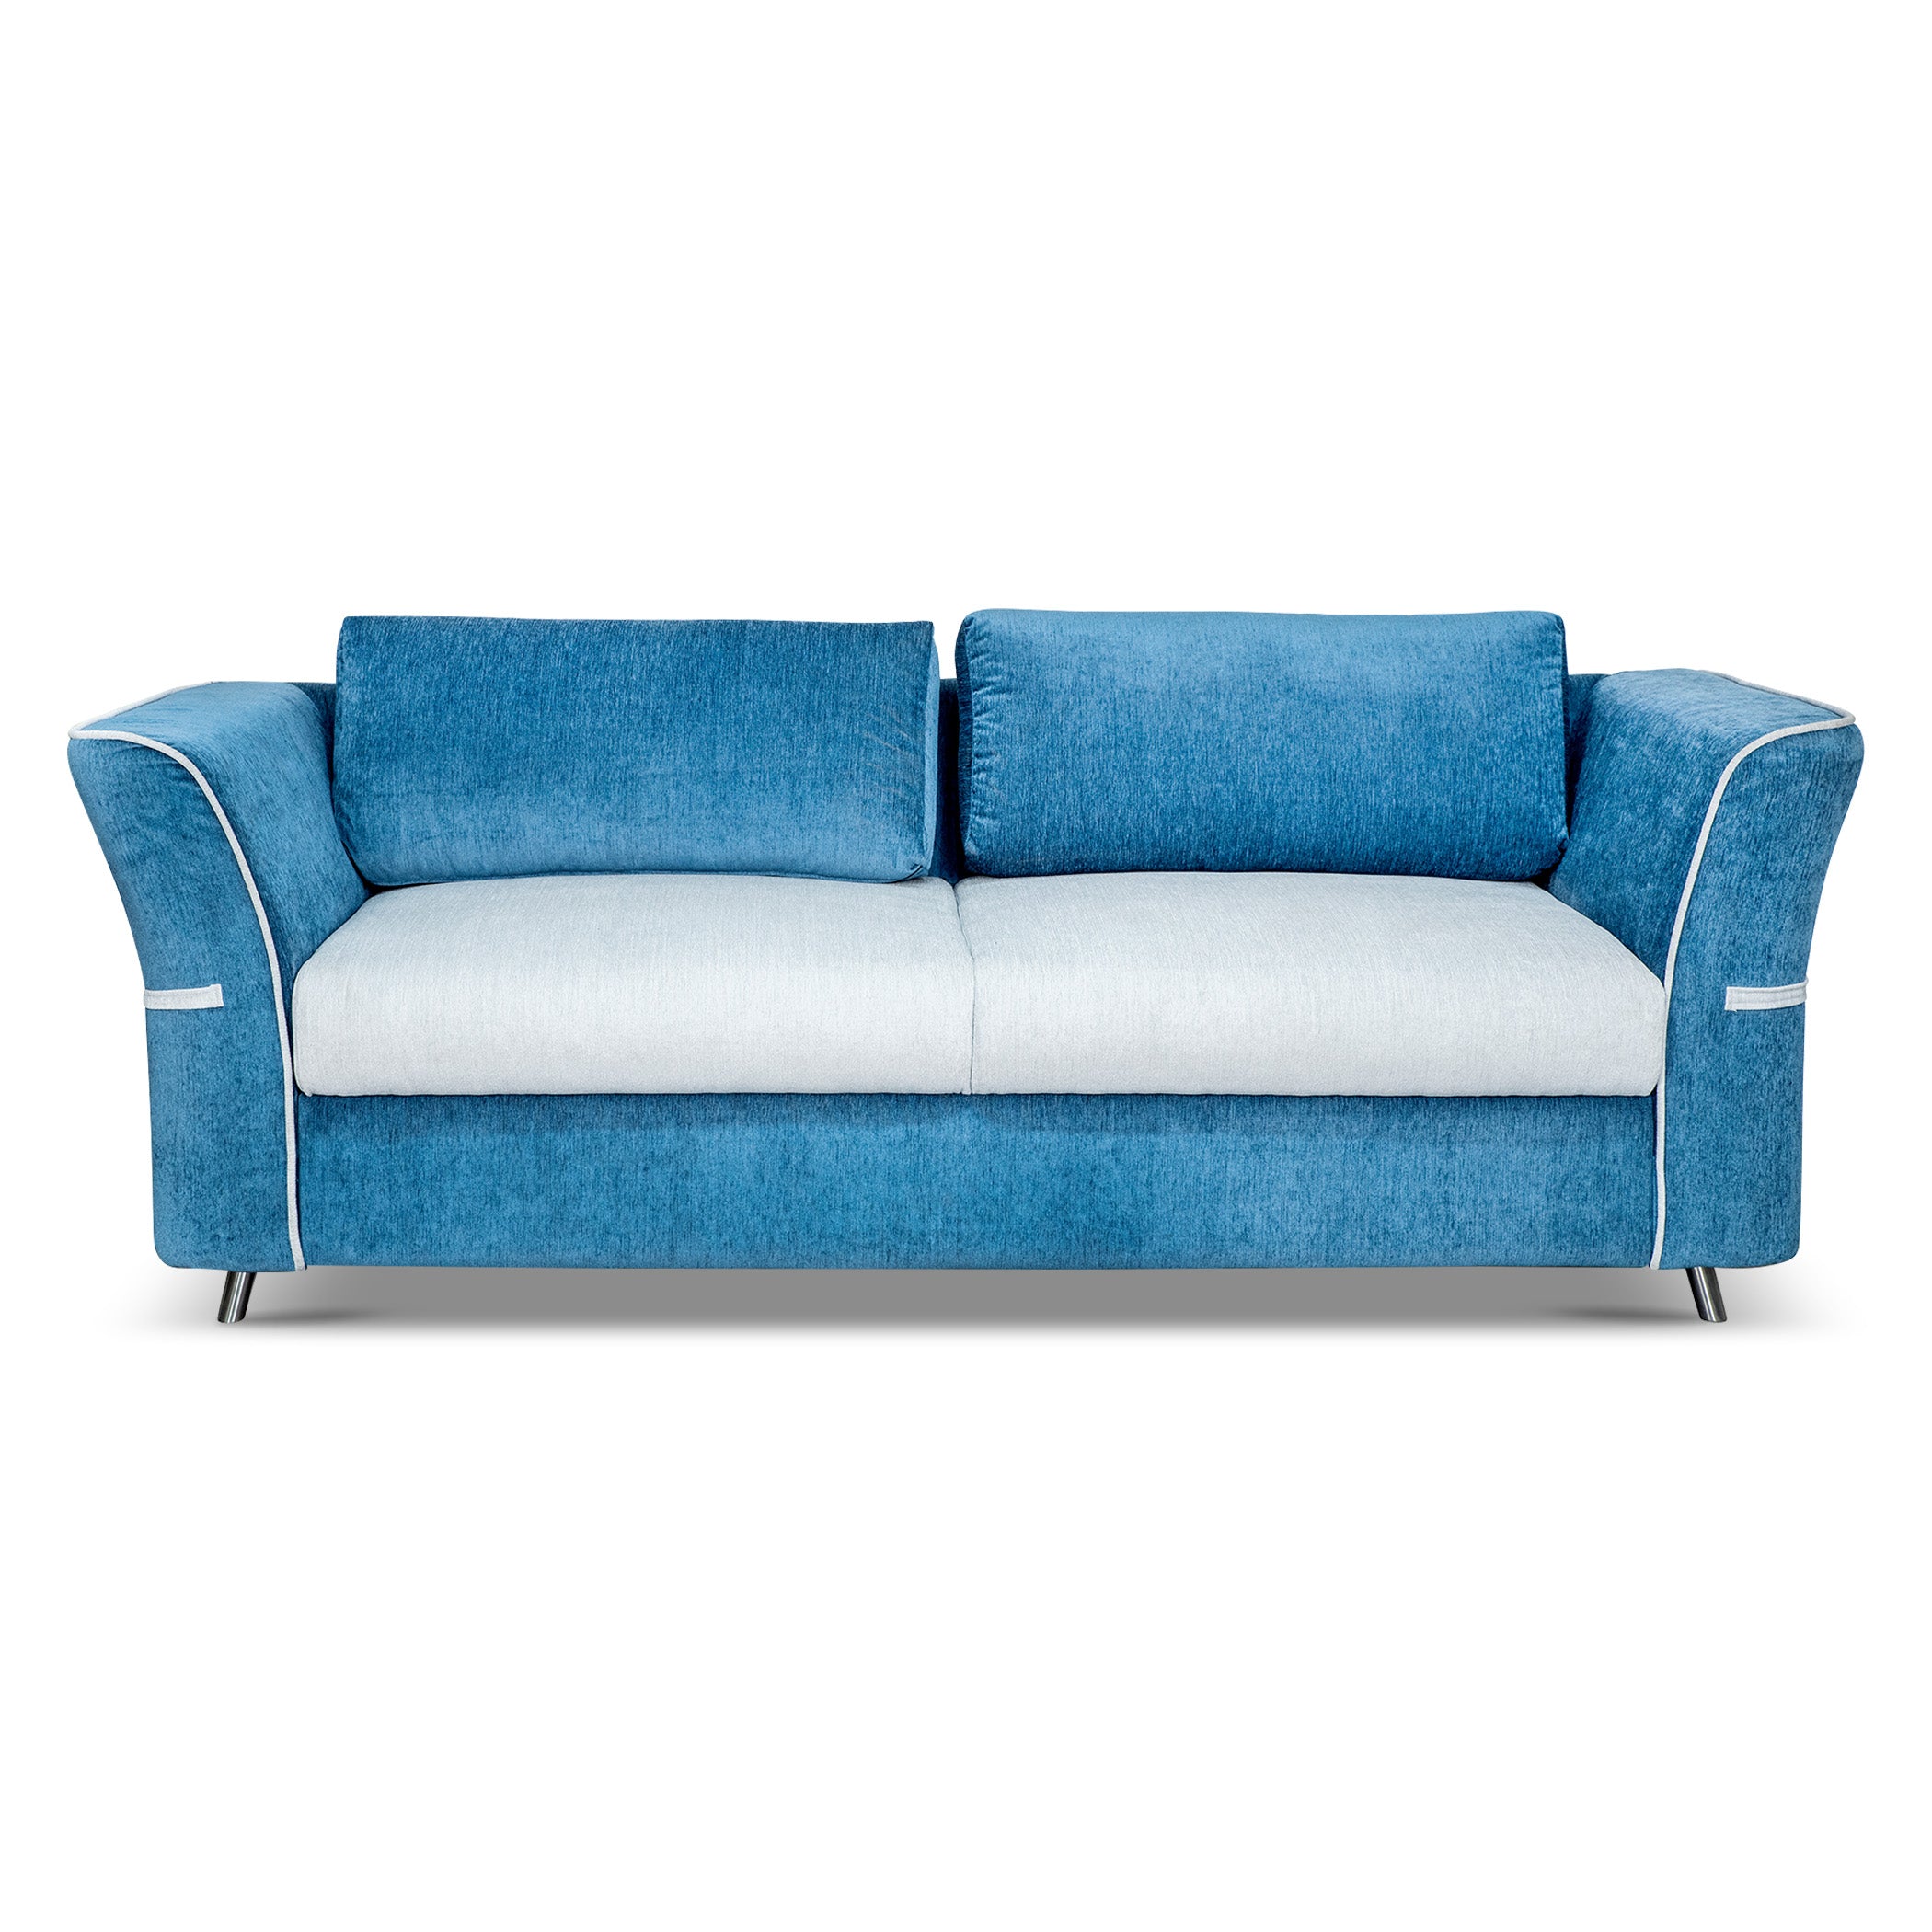 NewYork BlueTorquoise 3S Sofa by Zorin Zorin